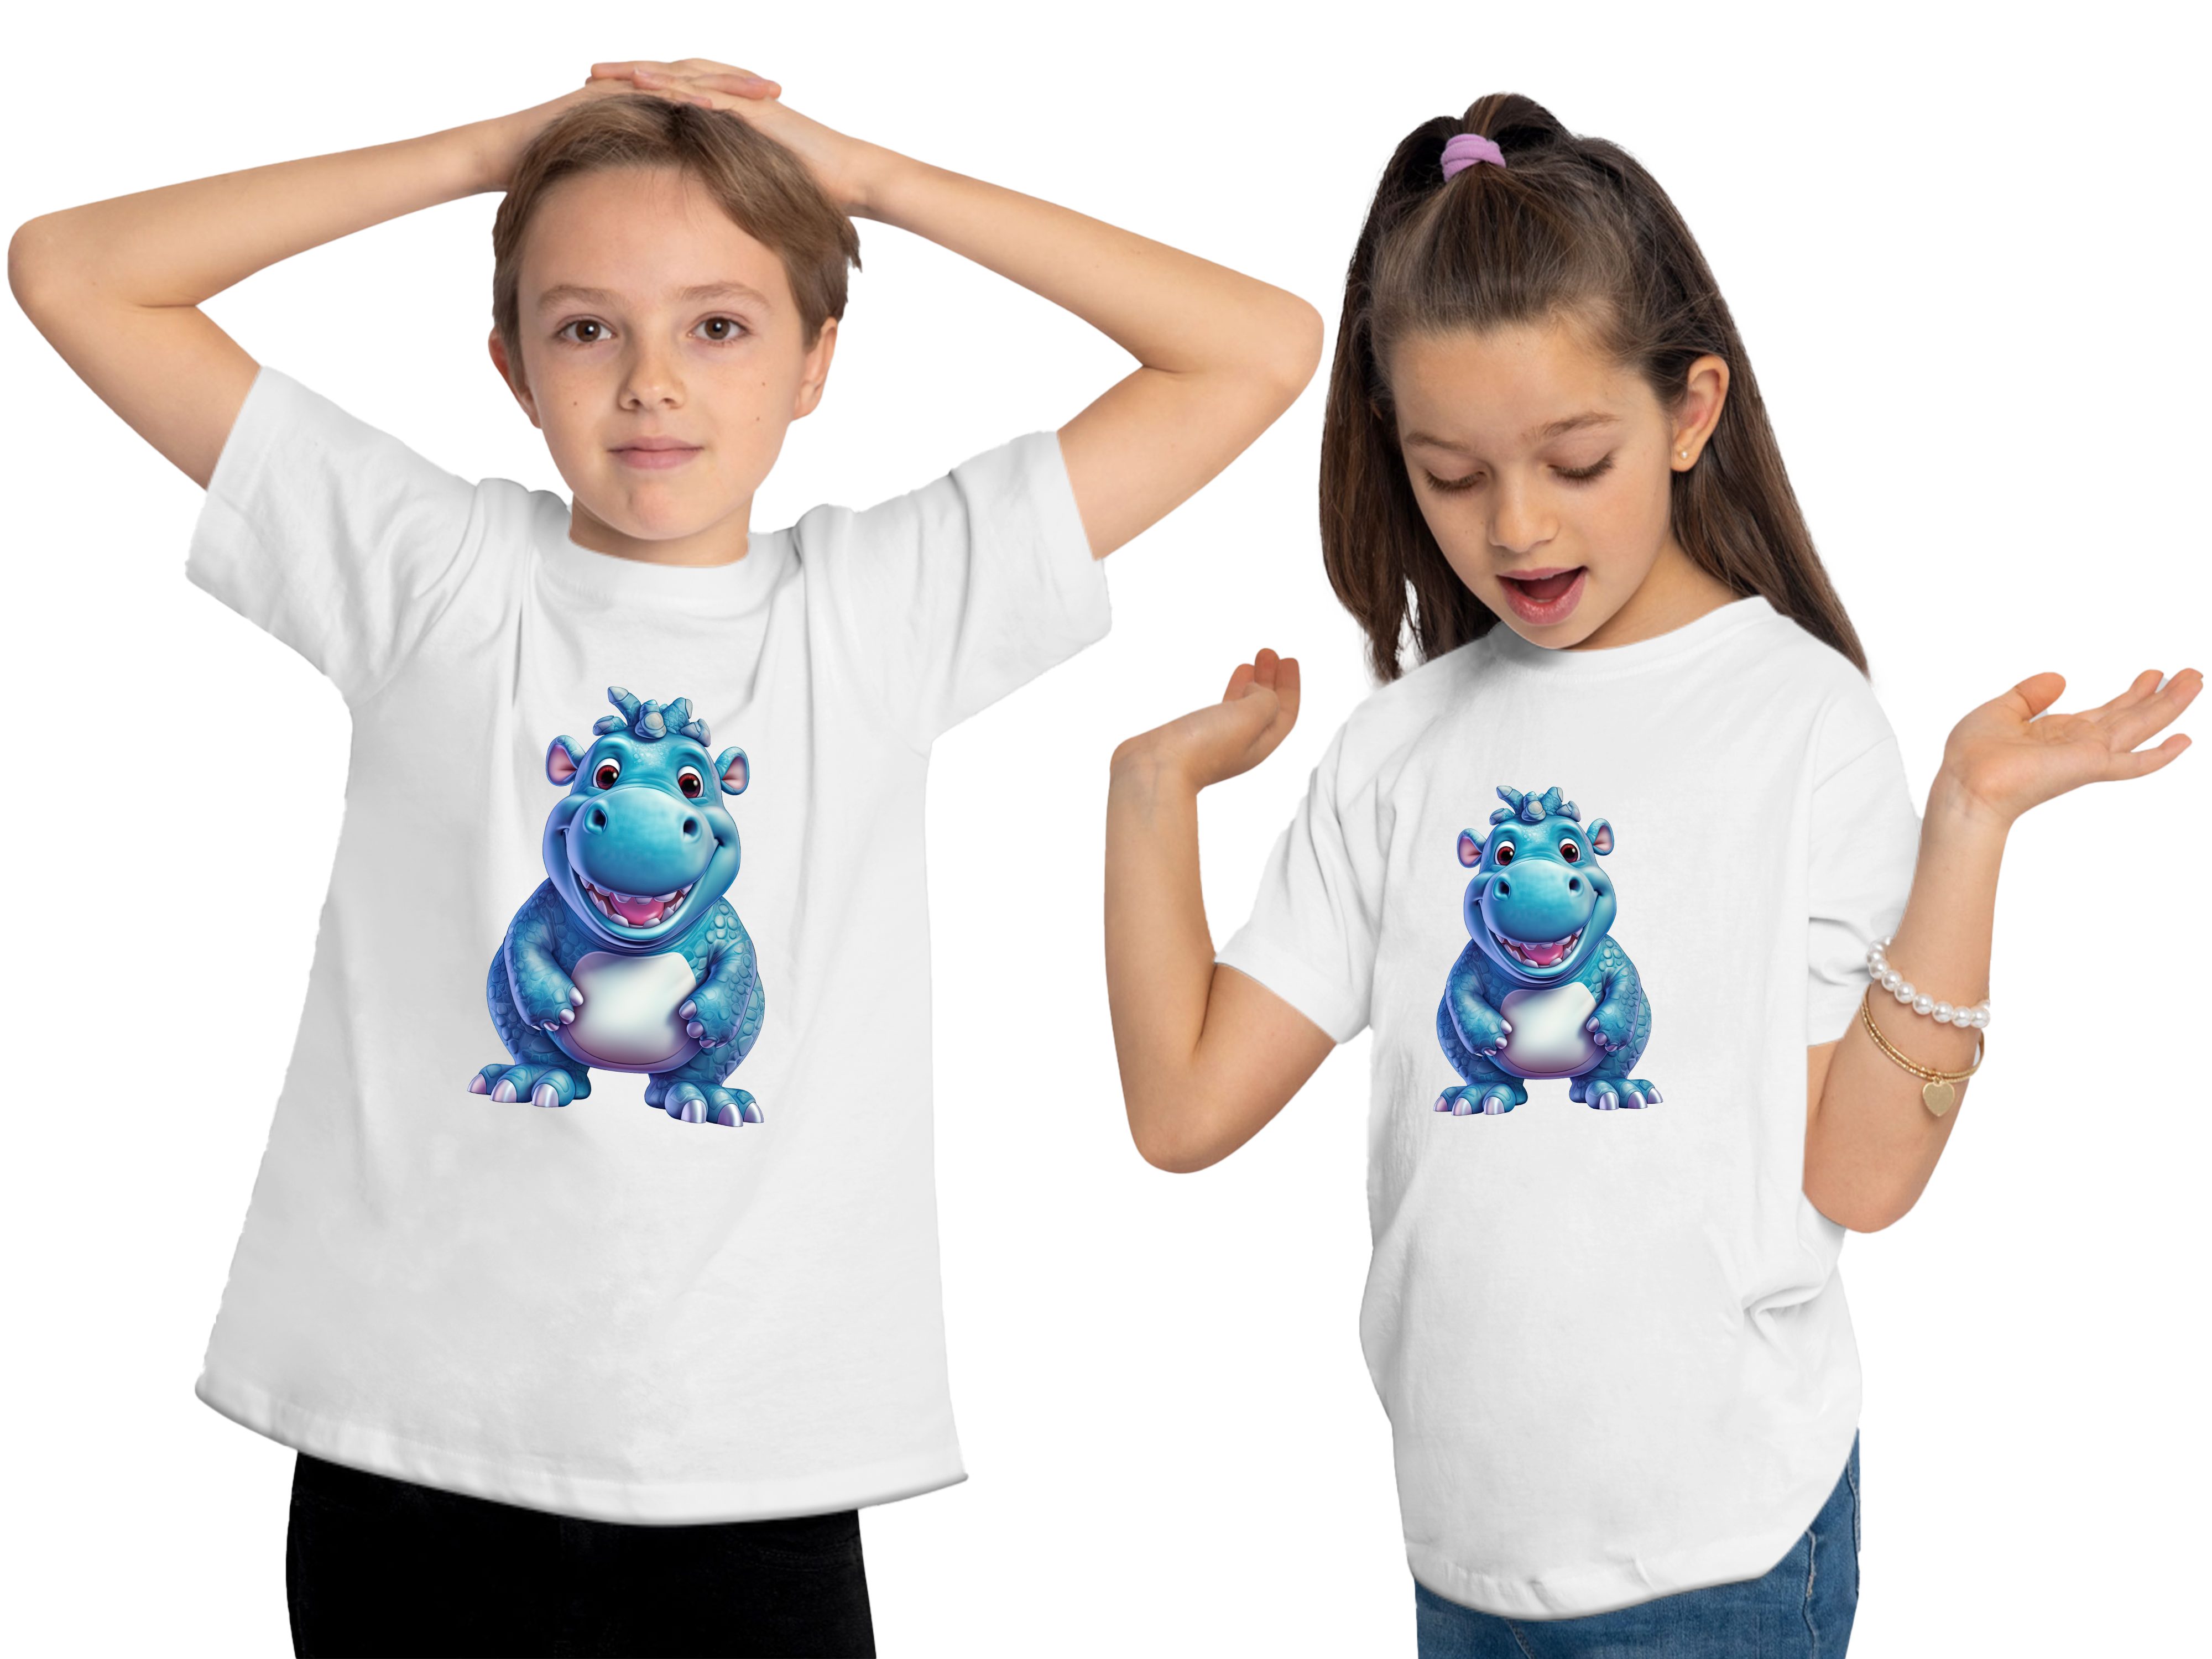 MyDesign24 T-Shirt Kinder - Baumwollshirt Nilpferd Baby Wildtier Hippo weiss i274 mit Aufdruck, Shirt bedruckt Print